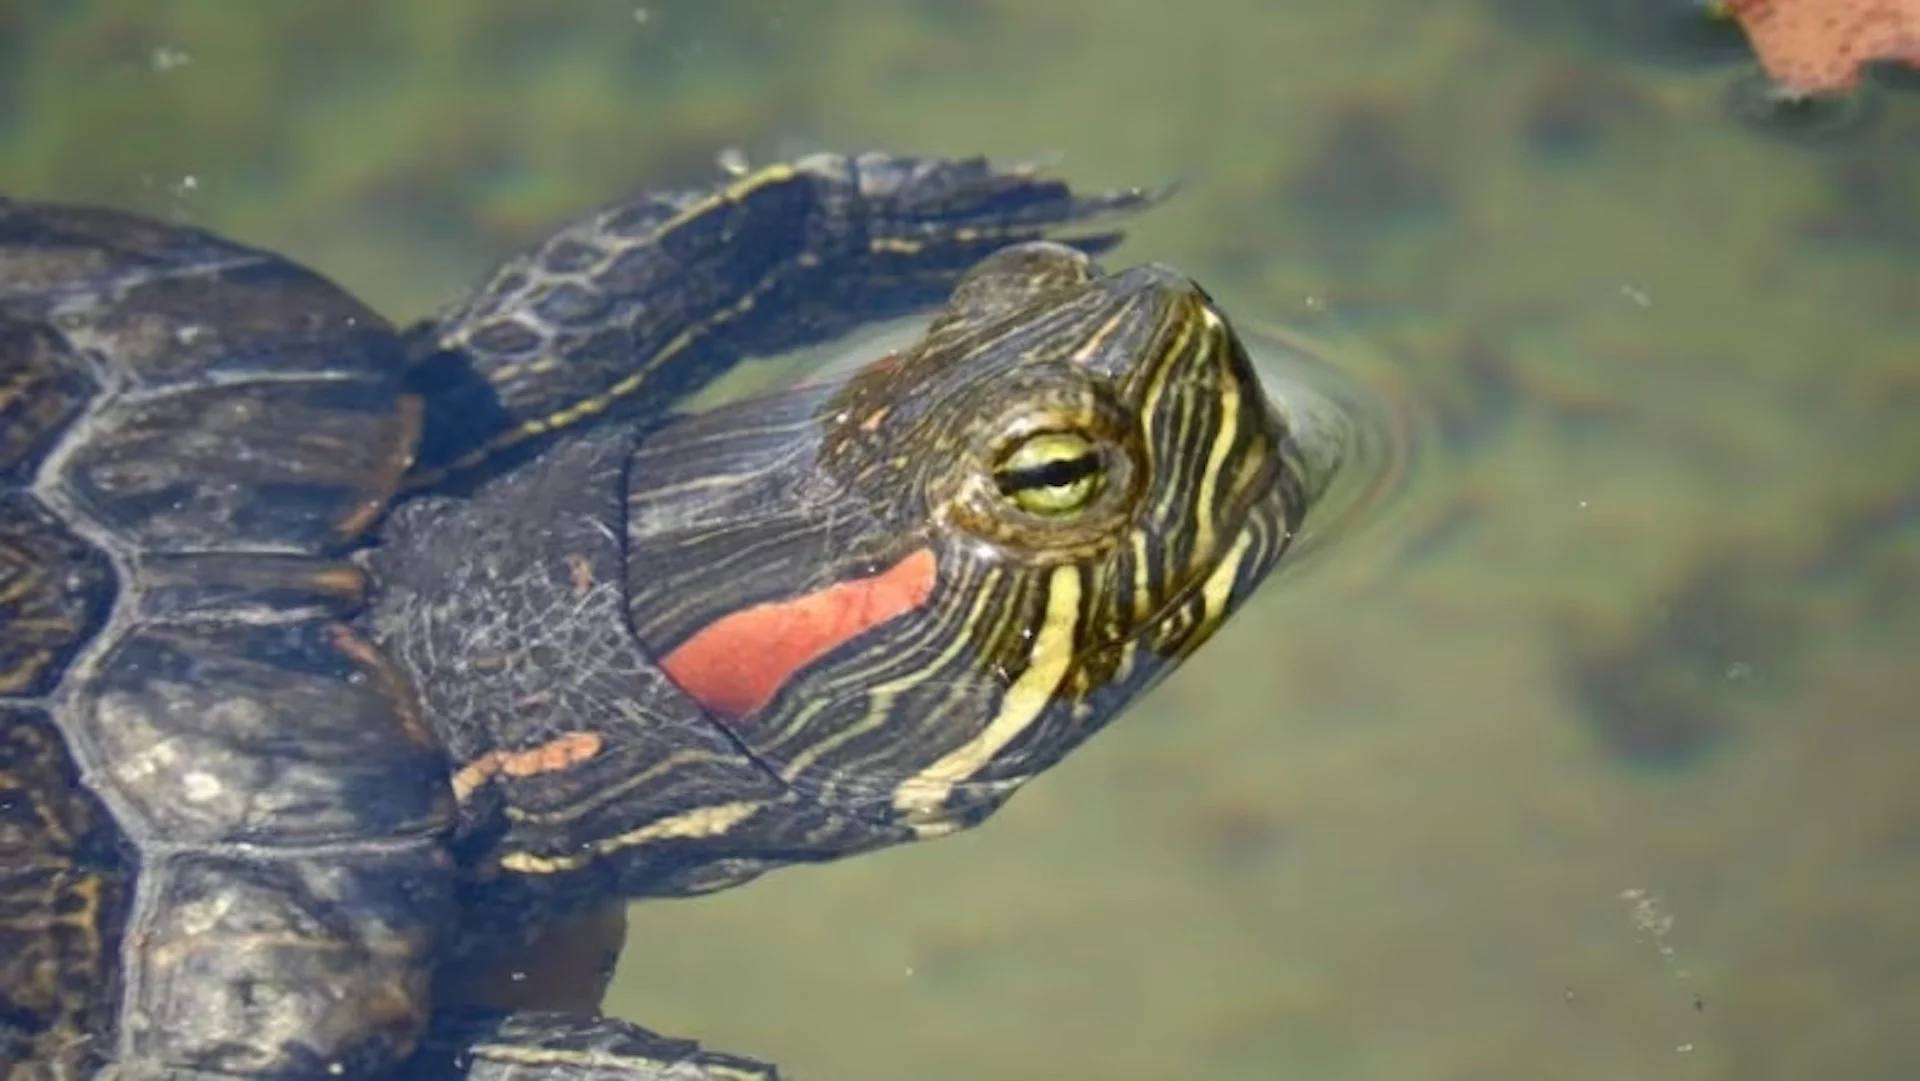 People dumping their pet turtles is threatening B.C. species: Biologist